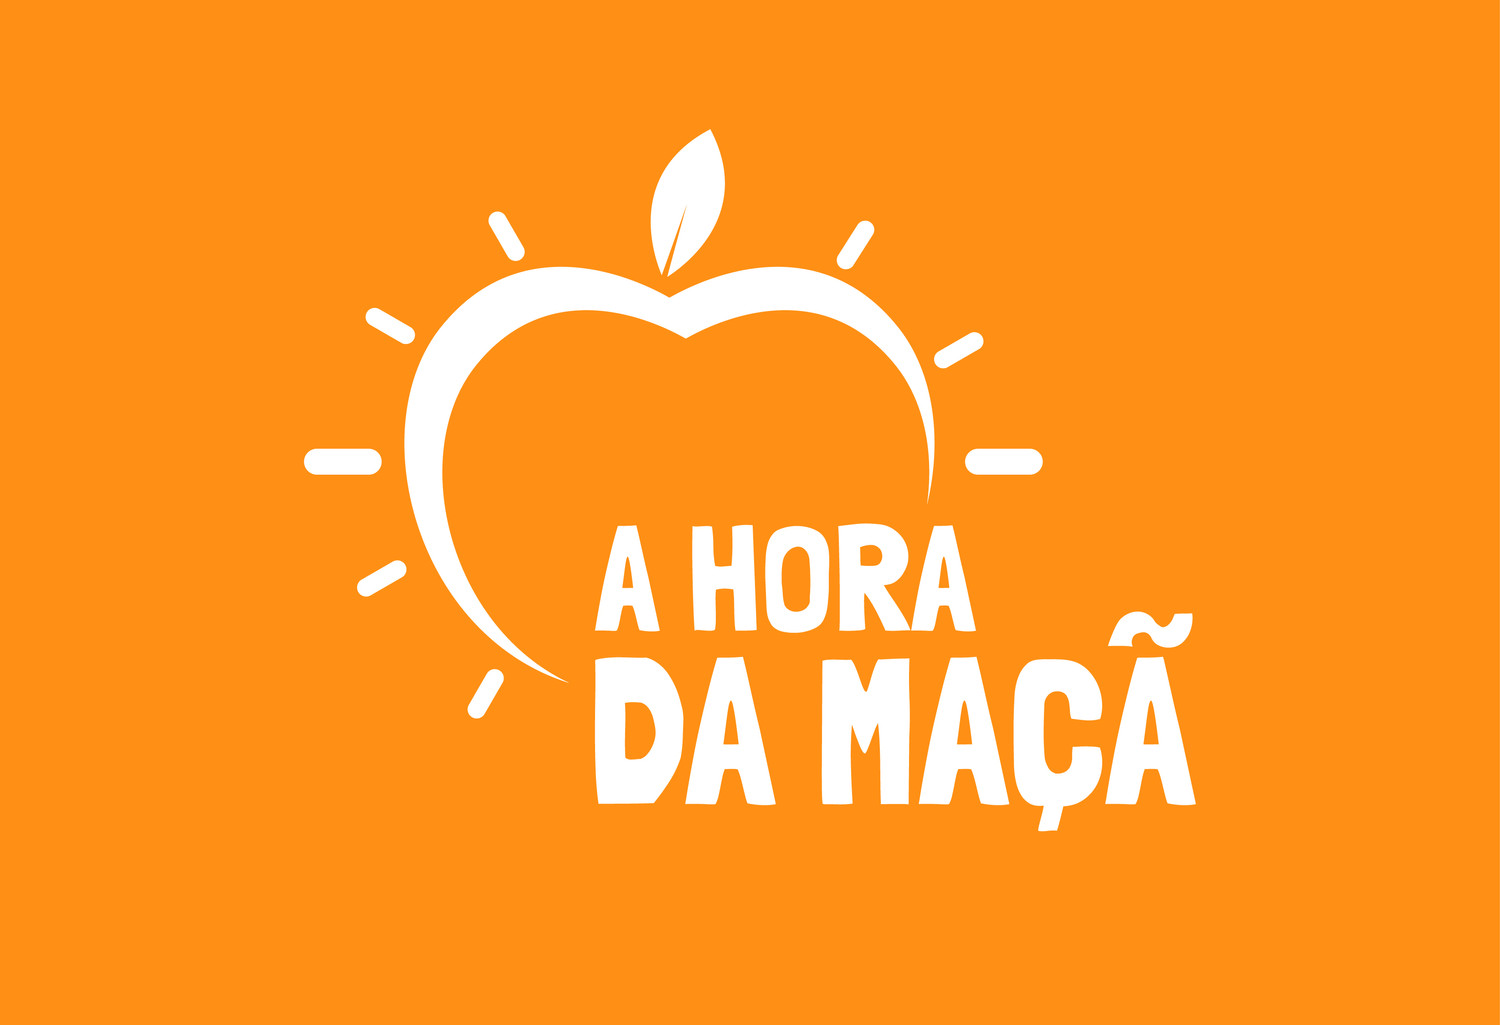 Le podcast "A Hora da Maçã" a une nouvelle image !